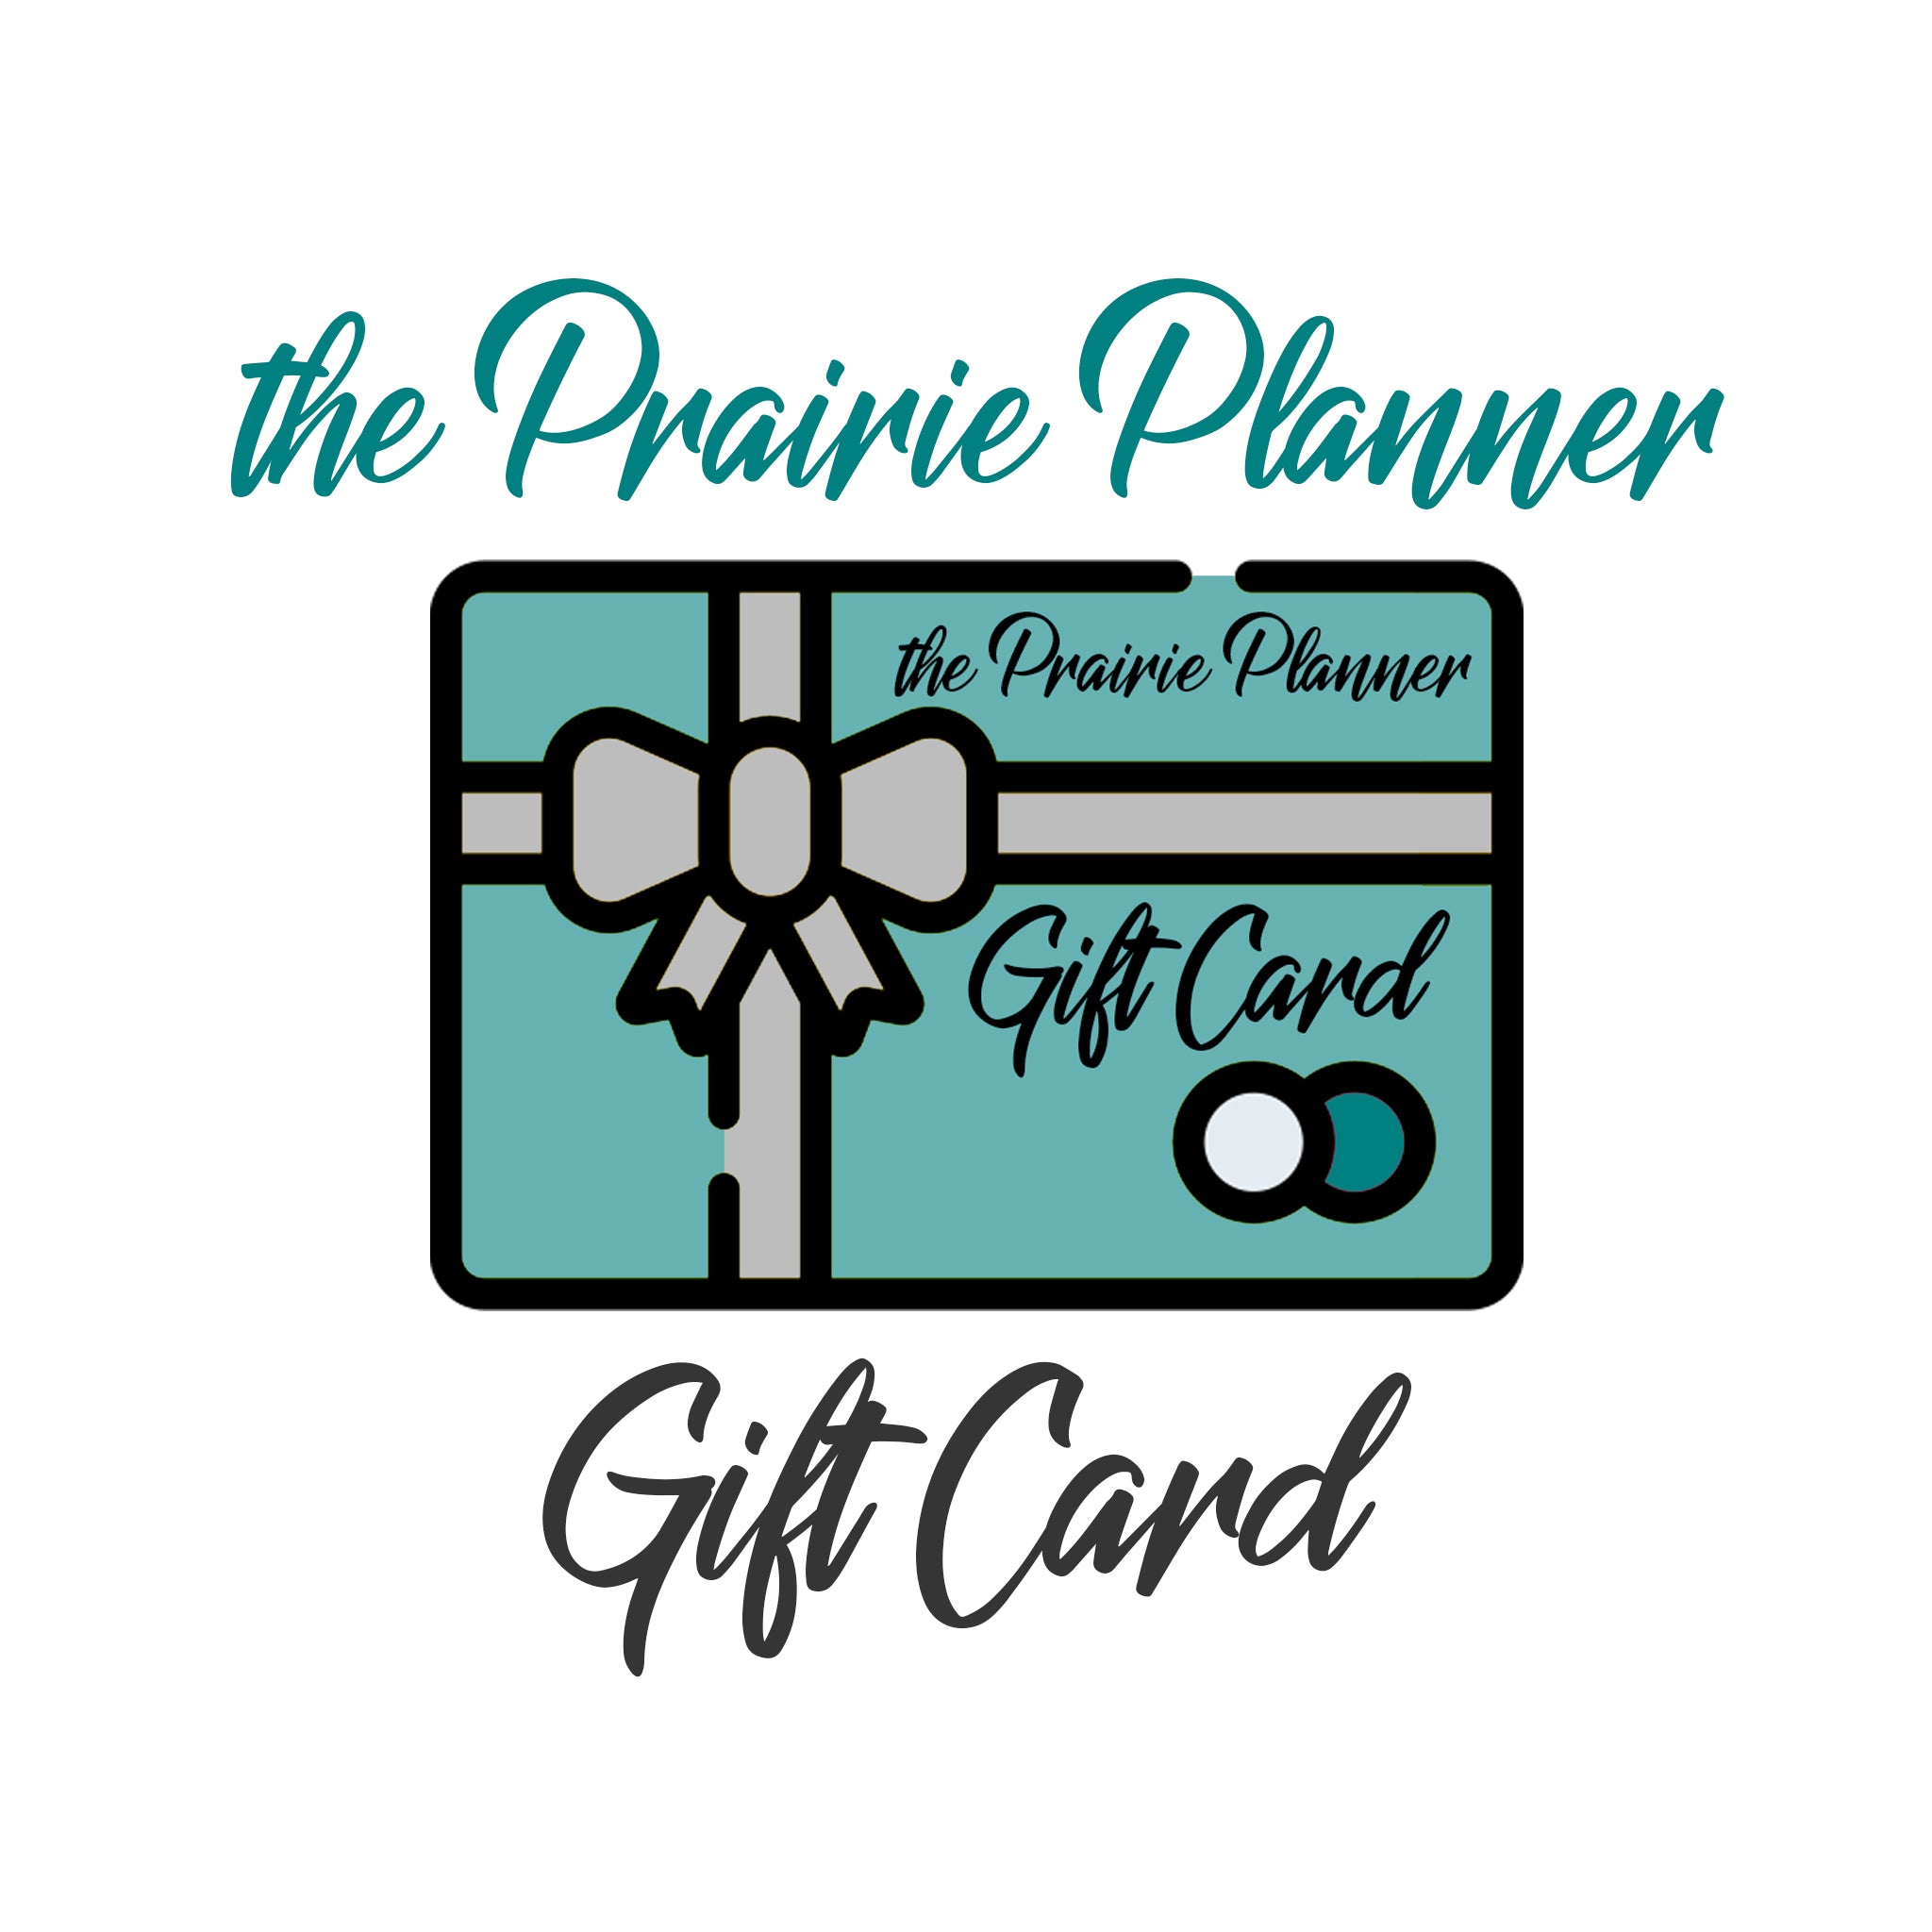 the Prairie Planner Gift Card